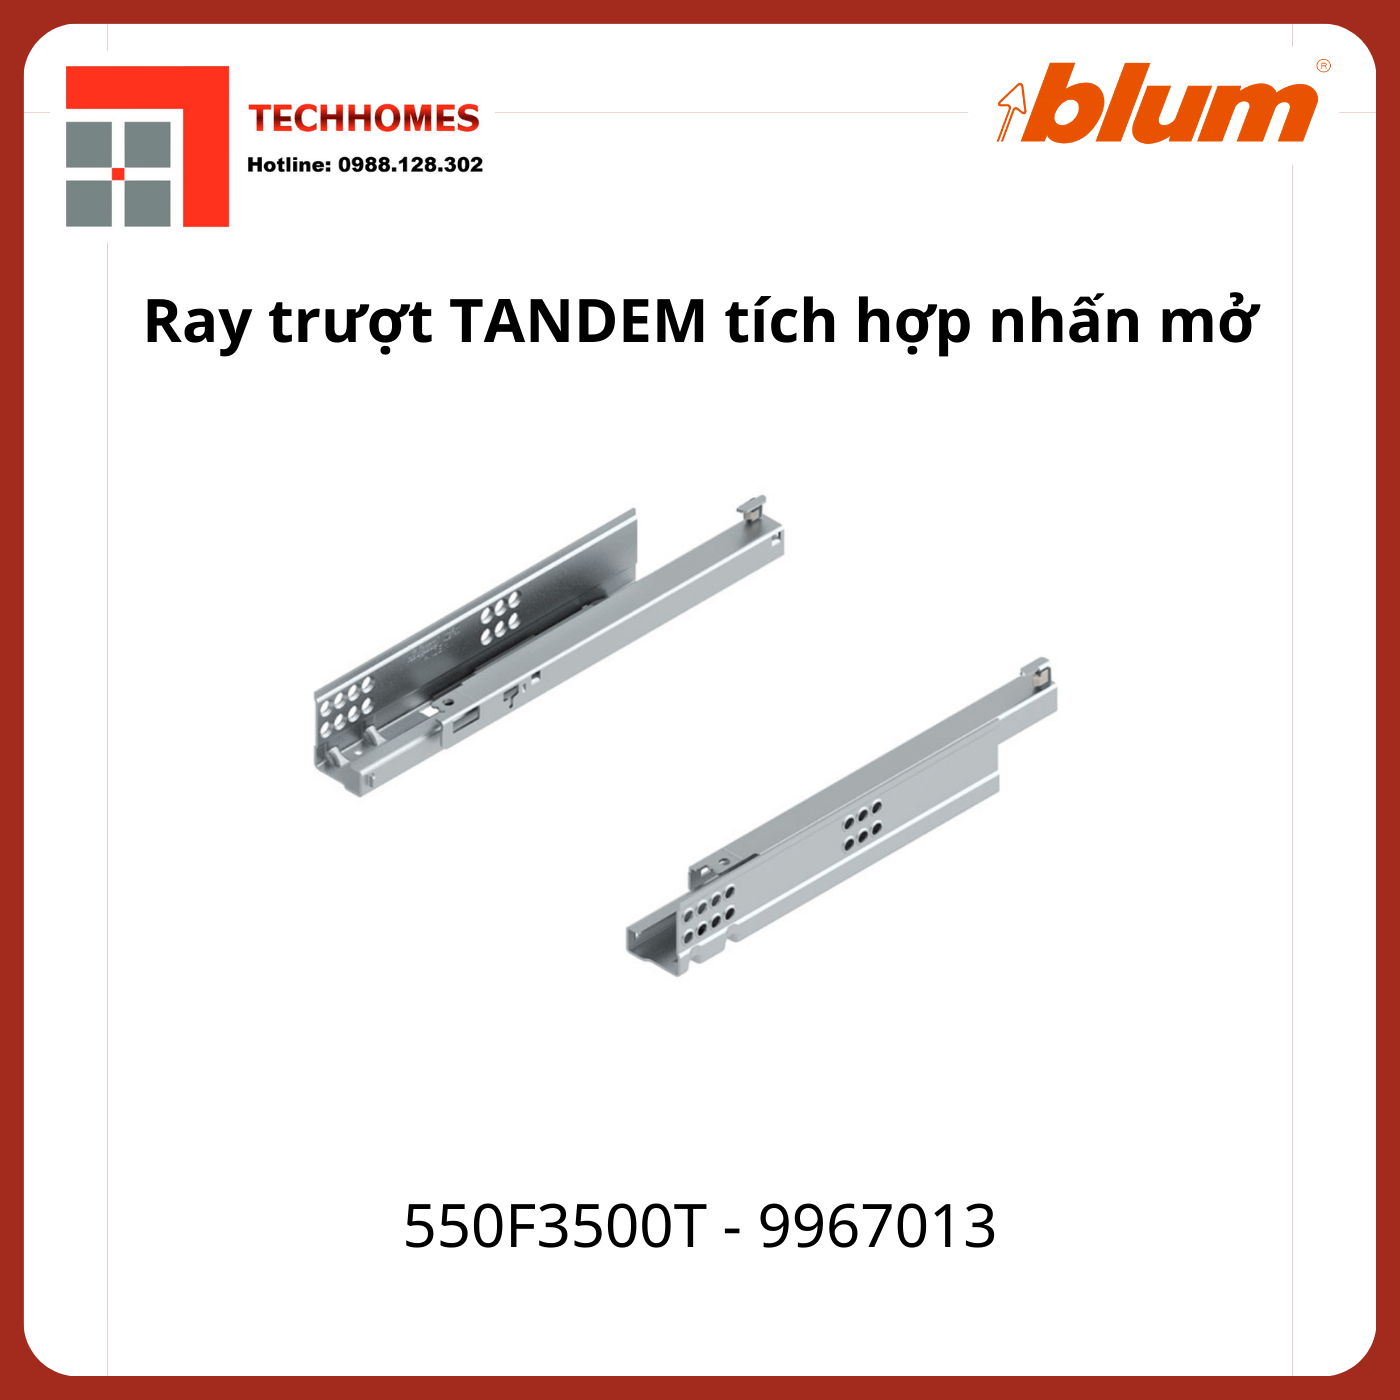 Ray trượt Blum TANDEM tích hợp nhấn mở 550F3500T 9967013 mở 3/4, 30 kg